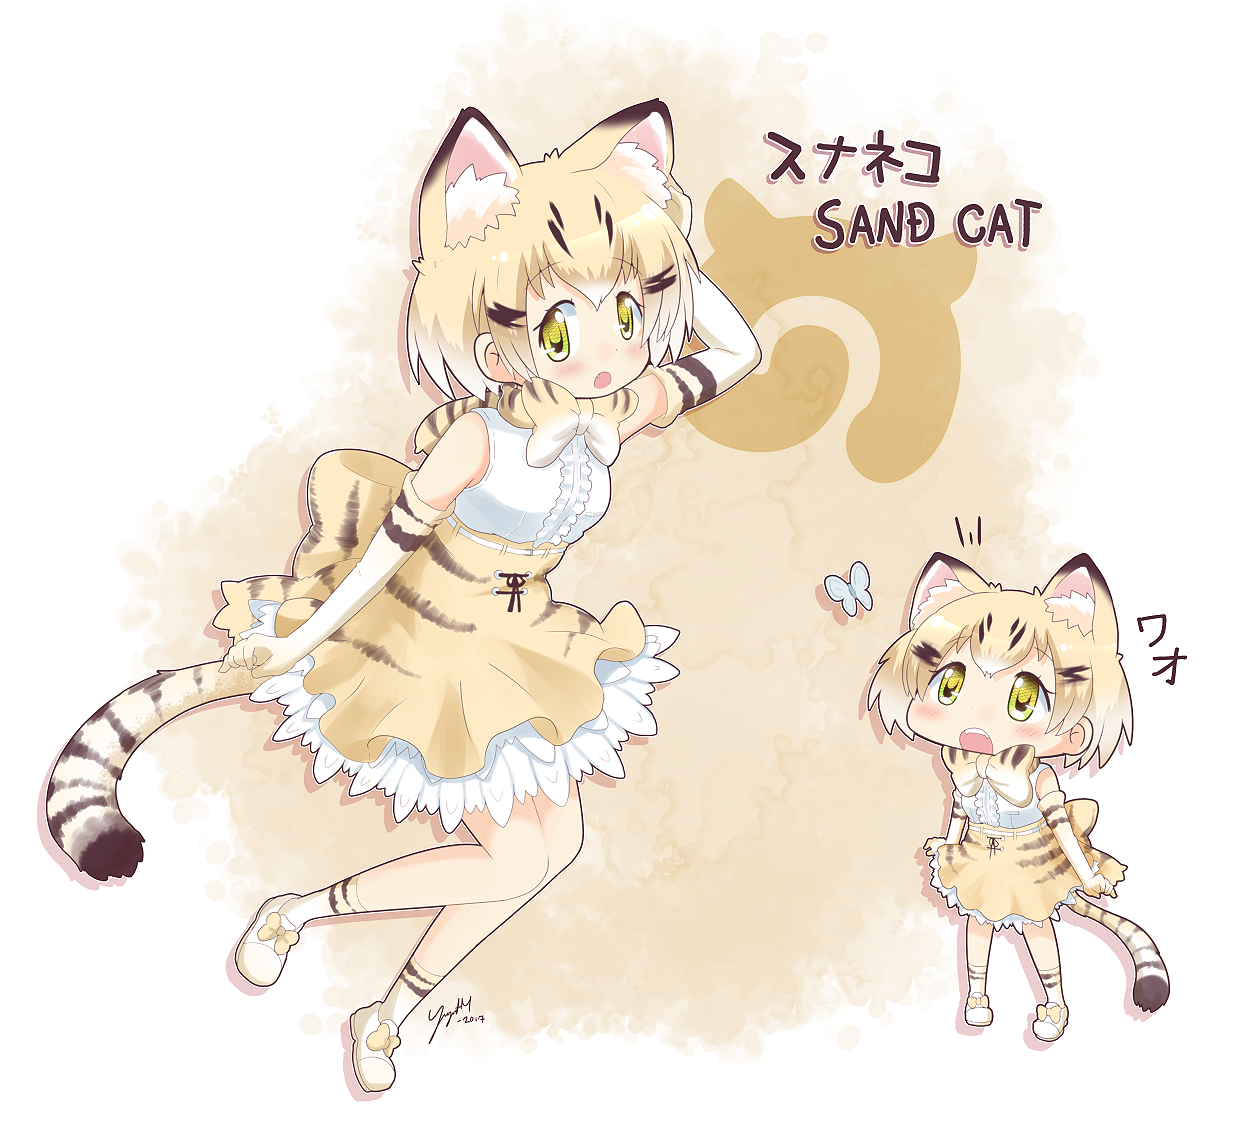 Sand Cat - Kemono Friends - [September 16, 2017]